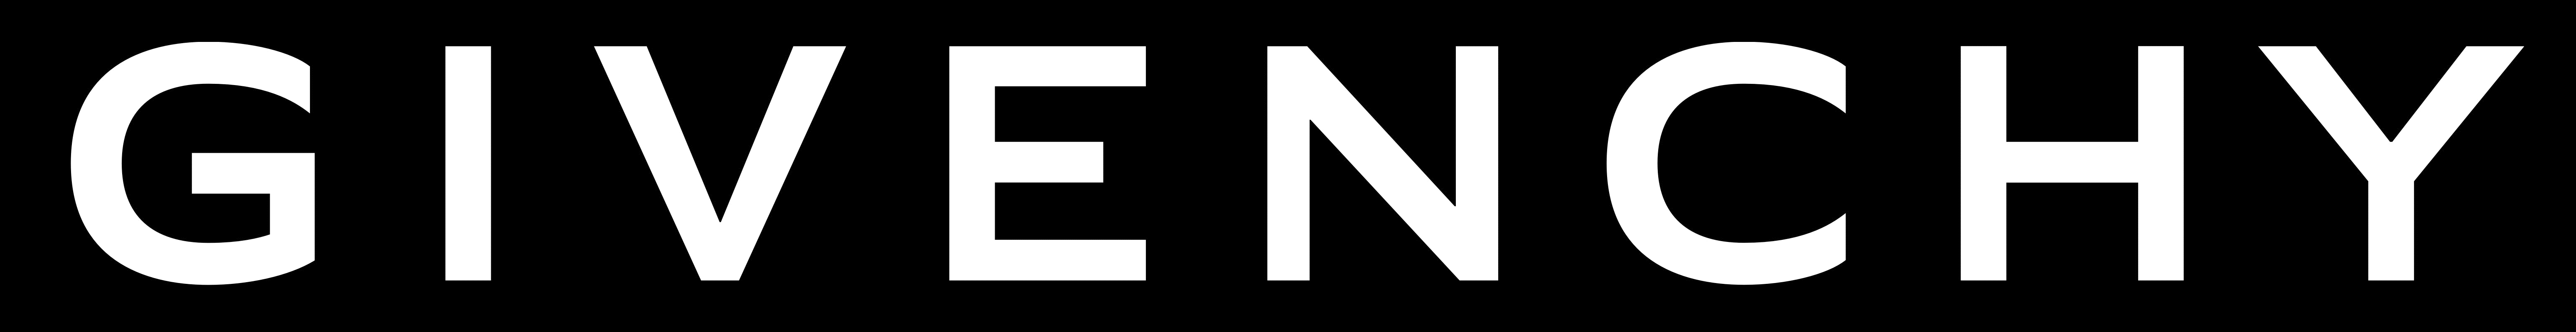 Givenchy Logo - Givenchy